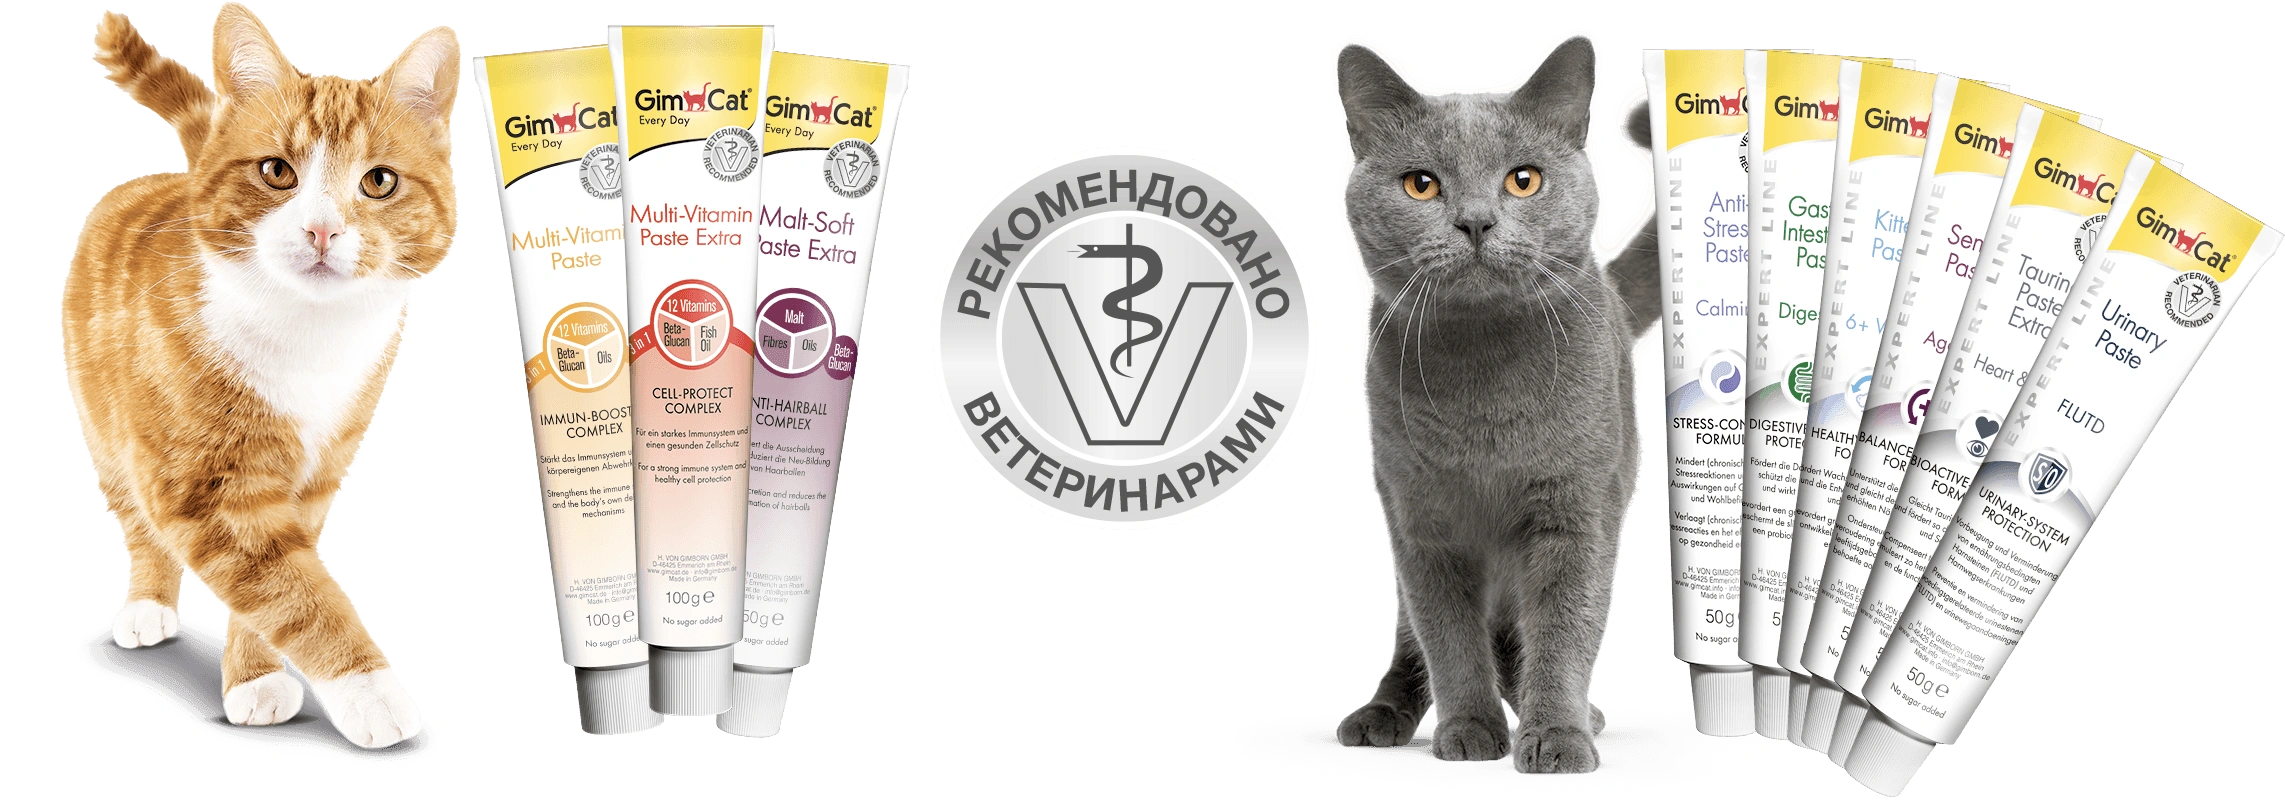 Как дать кошке пасту. Мультивитаминная паста для кошек GIMCAT Multi-Vitamin paste Extra, 200 гр. Мальт паста для кошек Джим Кэт. GIMCAT 40гр витамины для кошек для кожи и шерсти "скин и Коат табс". Gym Cat витамины для кошек.